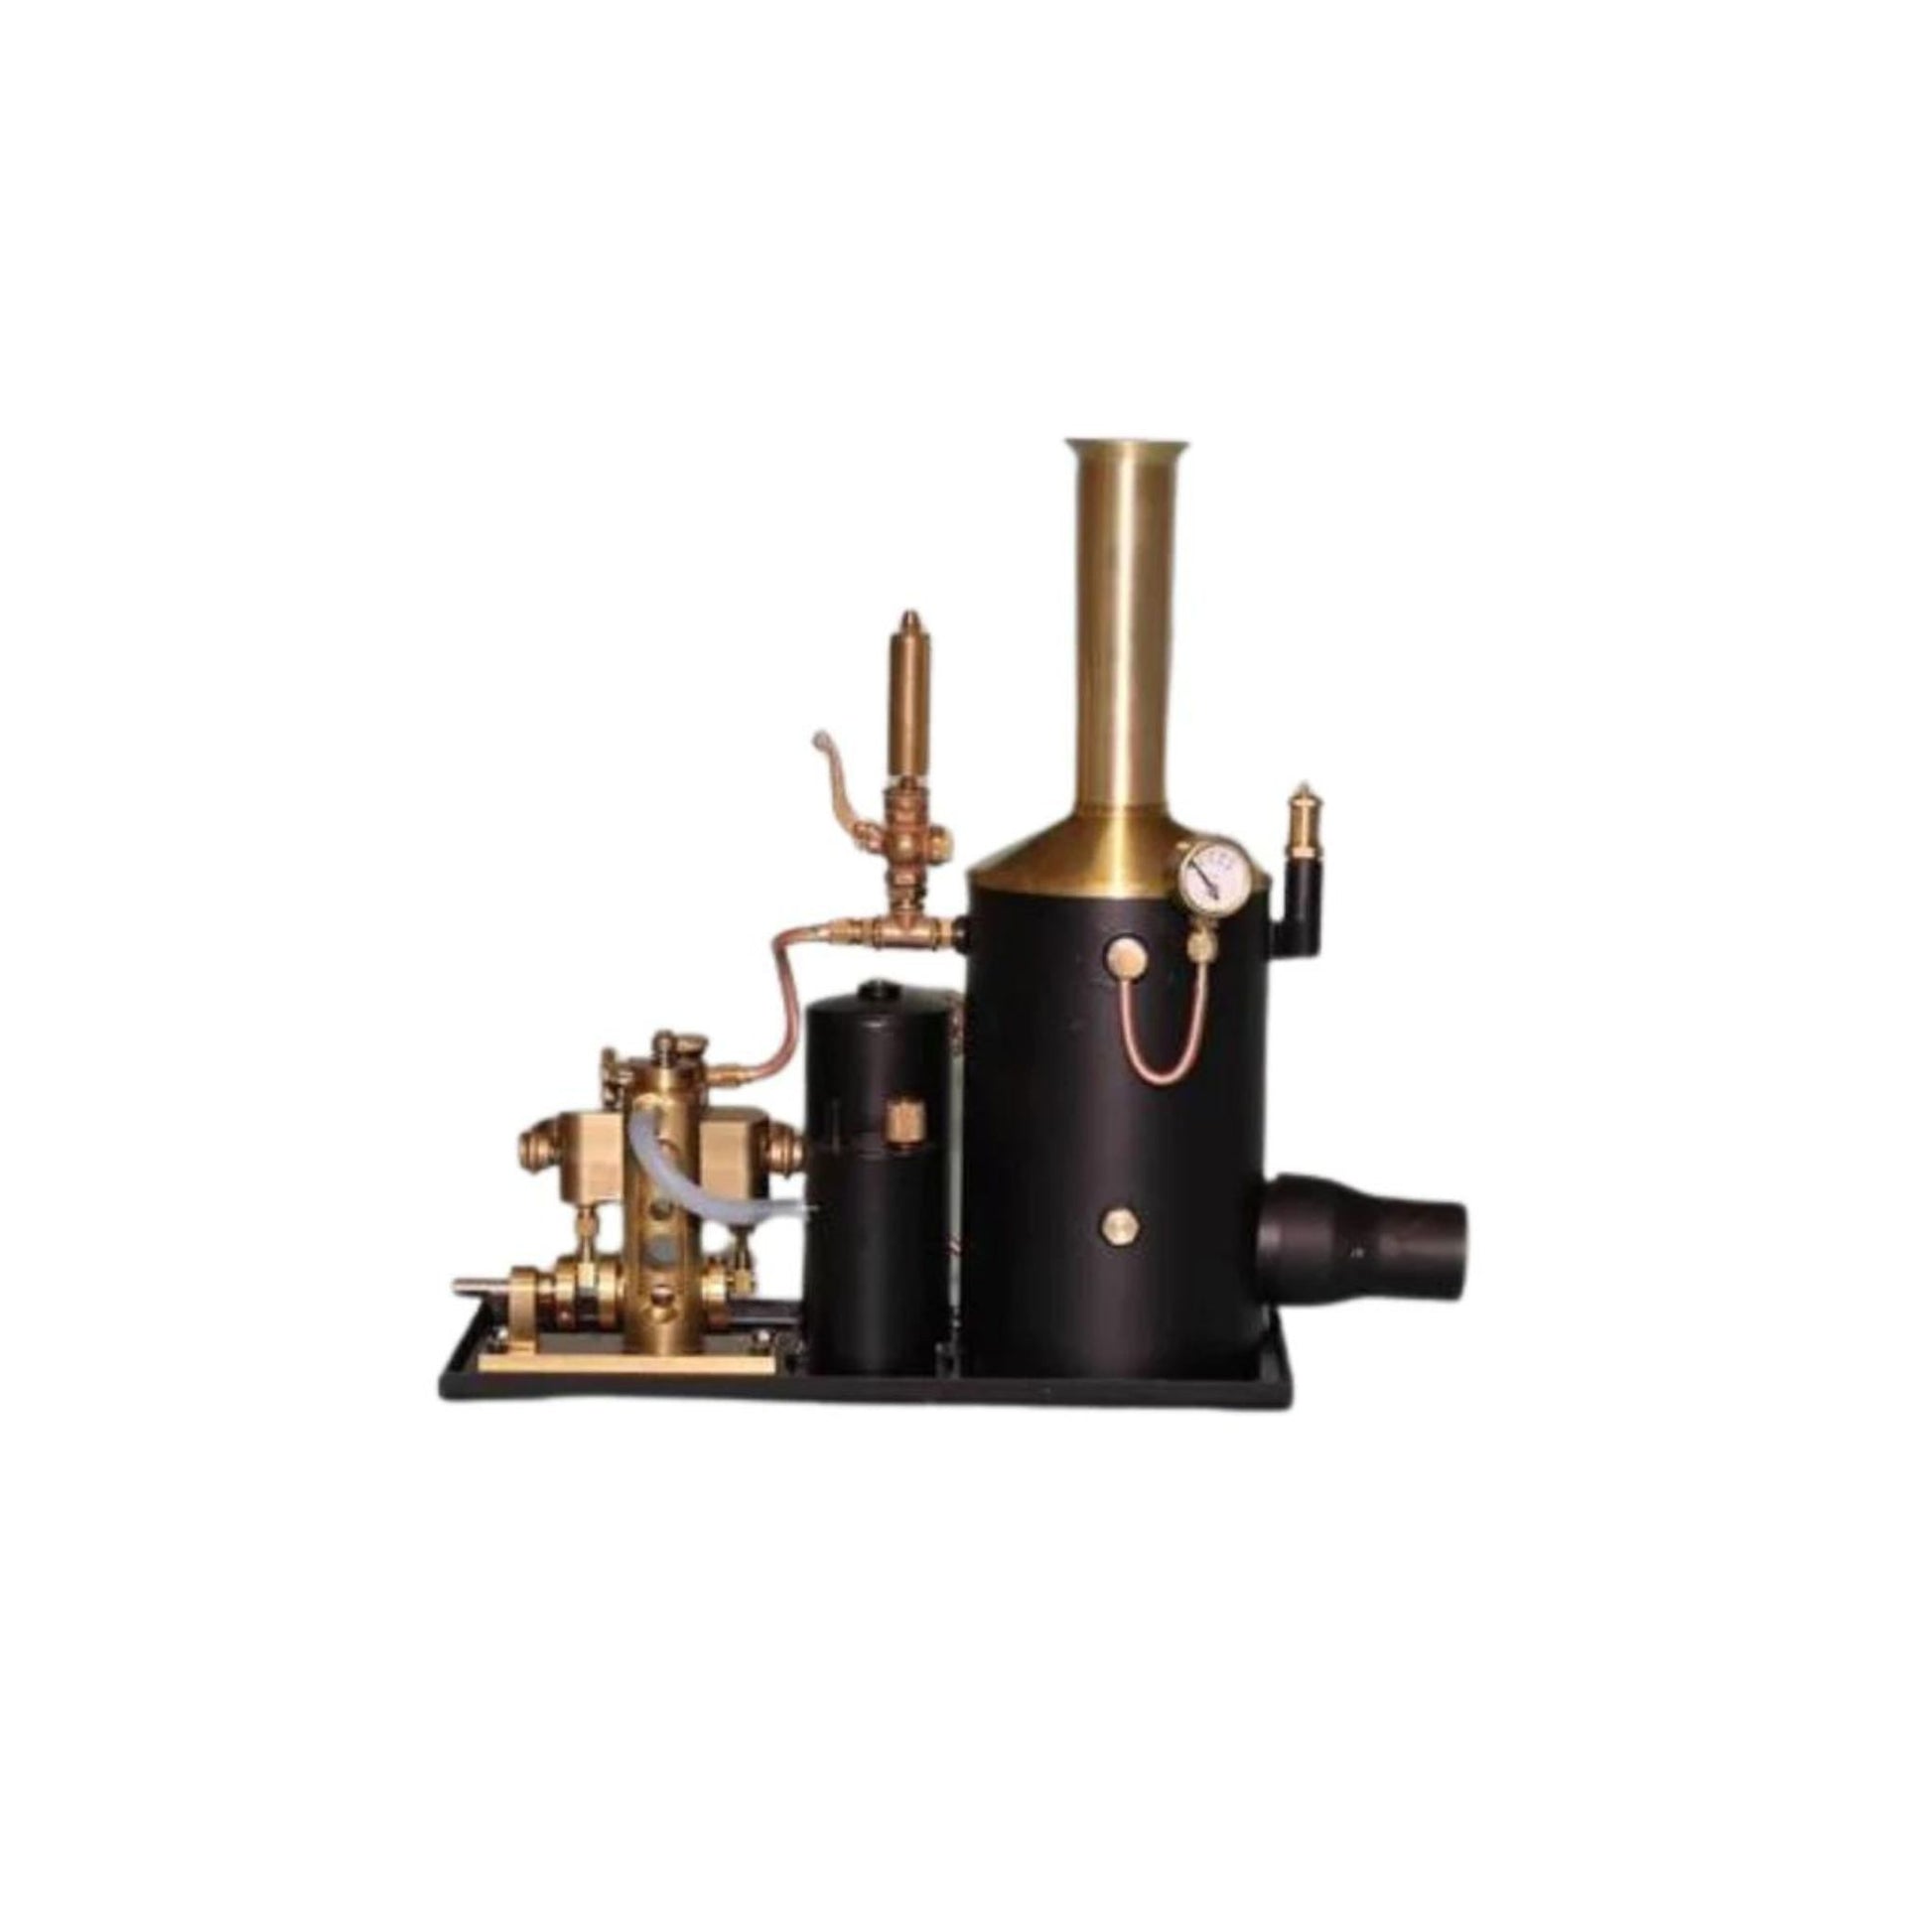  Vertical Boiler Avon steam Engine Steam Plant  